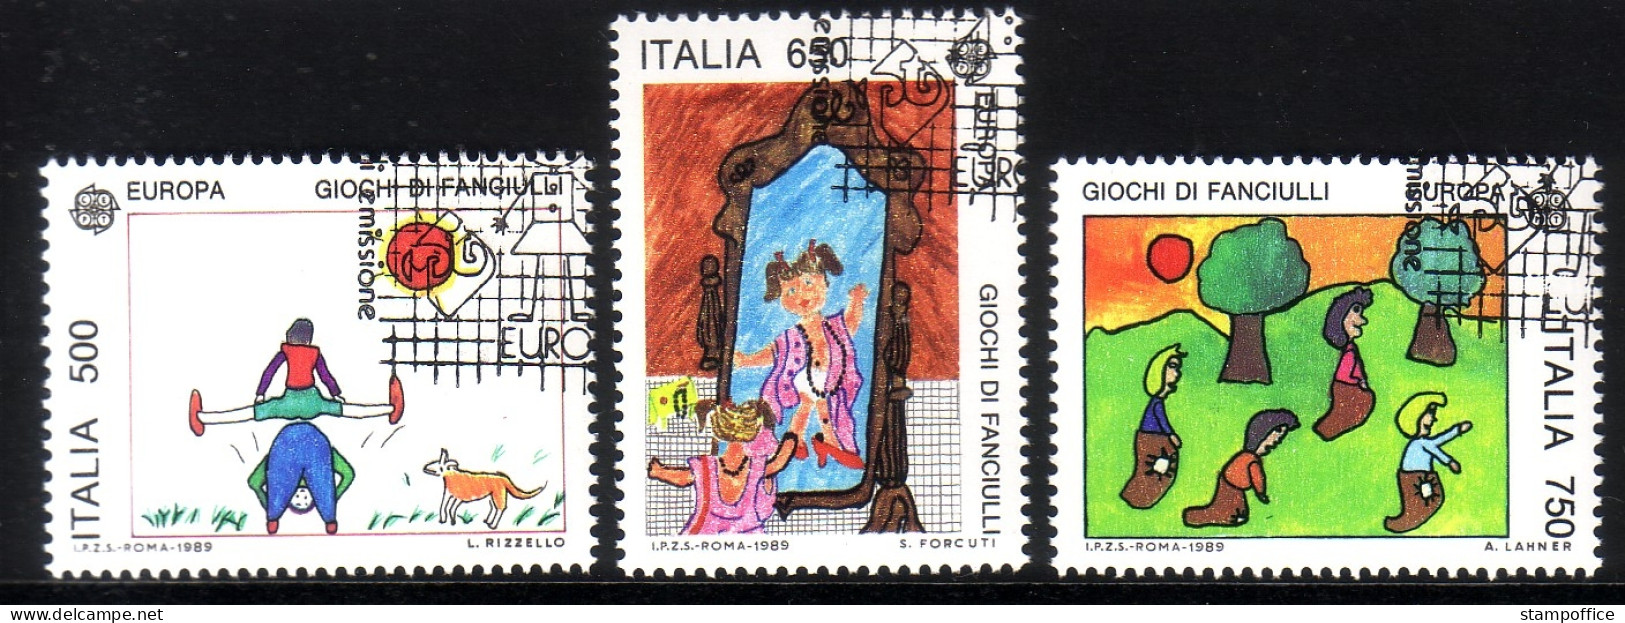 ITALIEN MI-NR. 2078-2080 GESTEMPELT(USED) EUROPA 1989 KINDERSPIELE - 1989